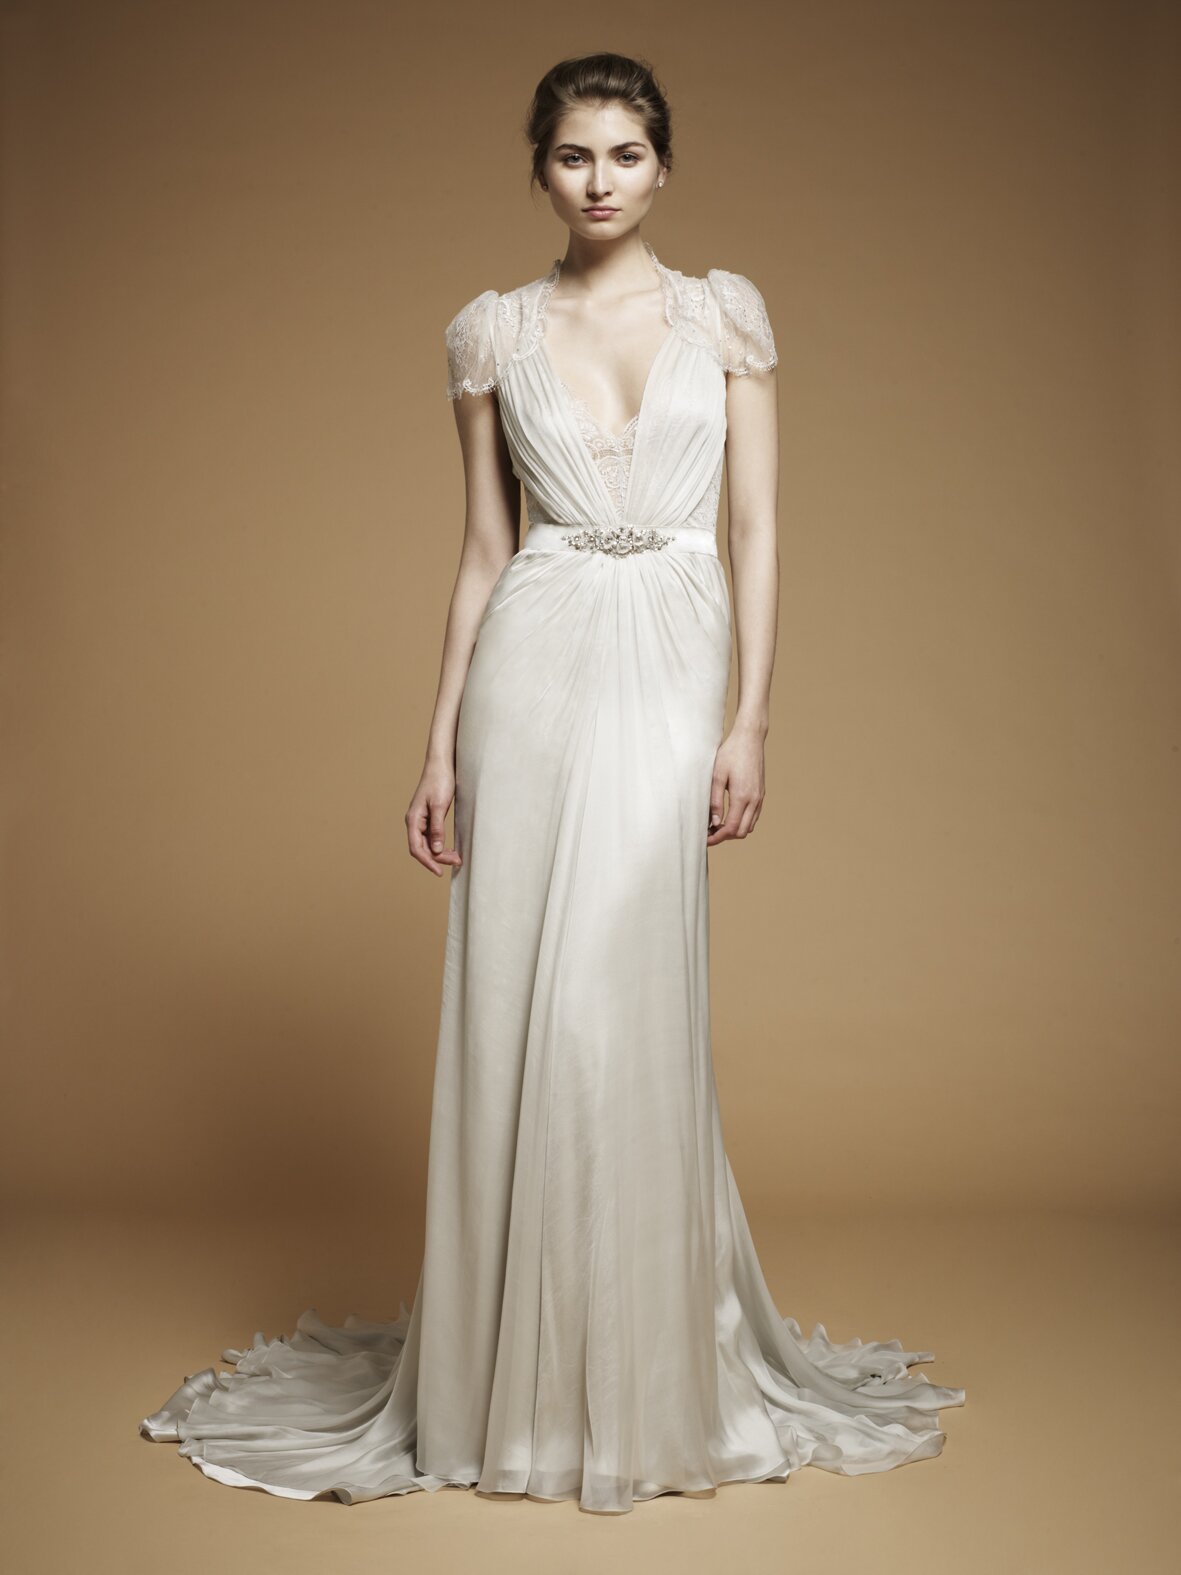 Jenny Packham wedding dresses Photo - 1